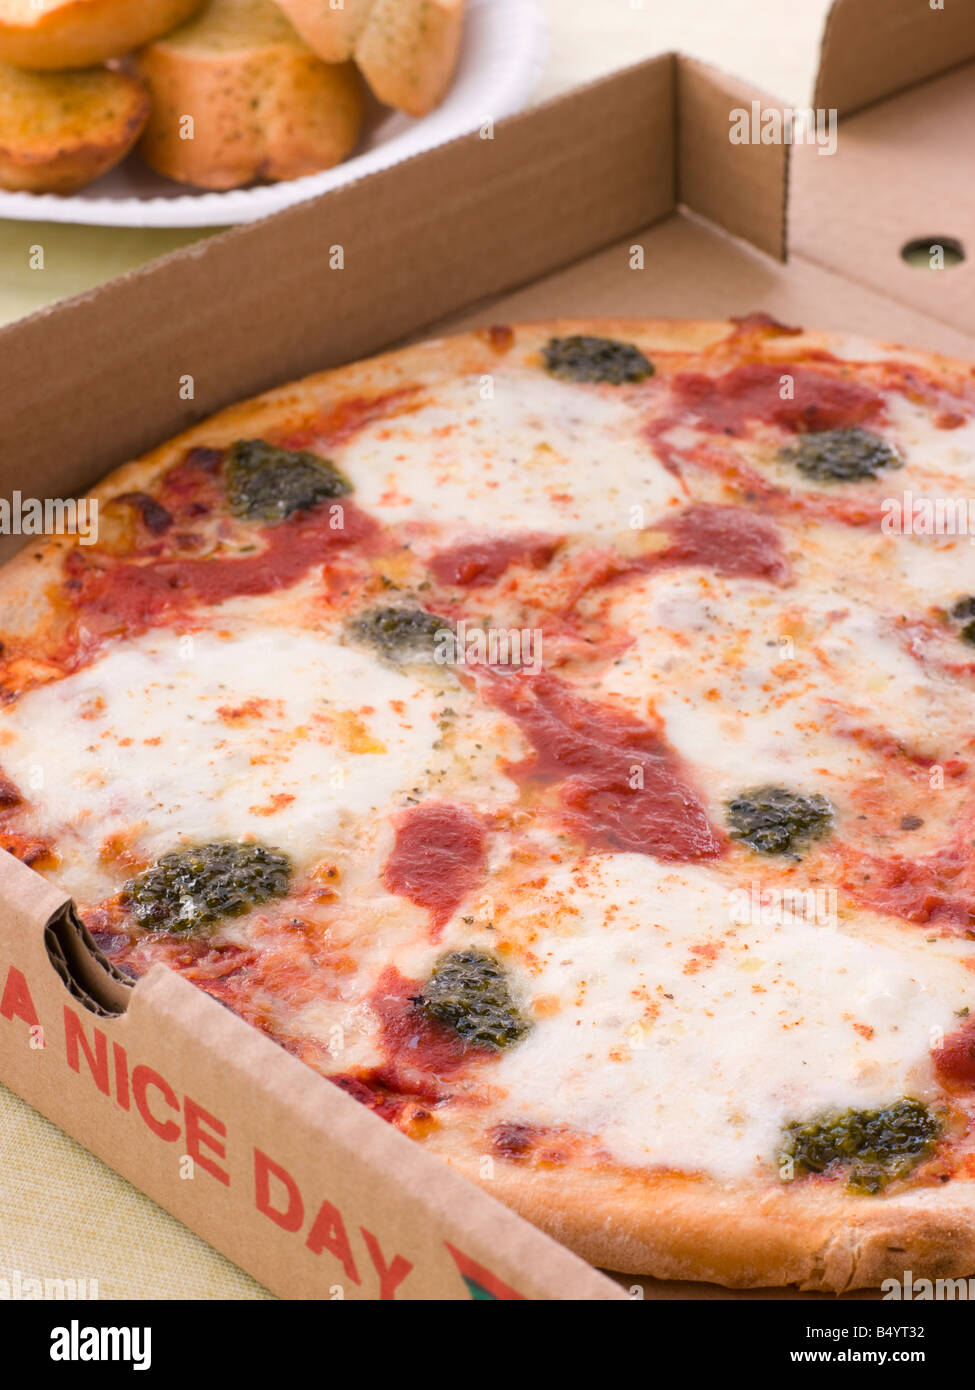 Käse, Tomaten und Pesto Pizza In A Take Away Box mit Knoblauchbrot Stockfoto